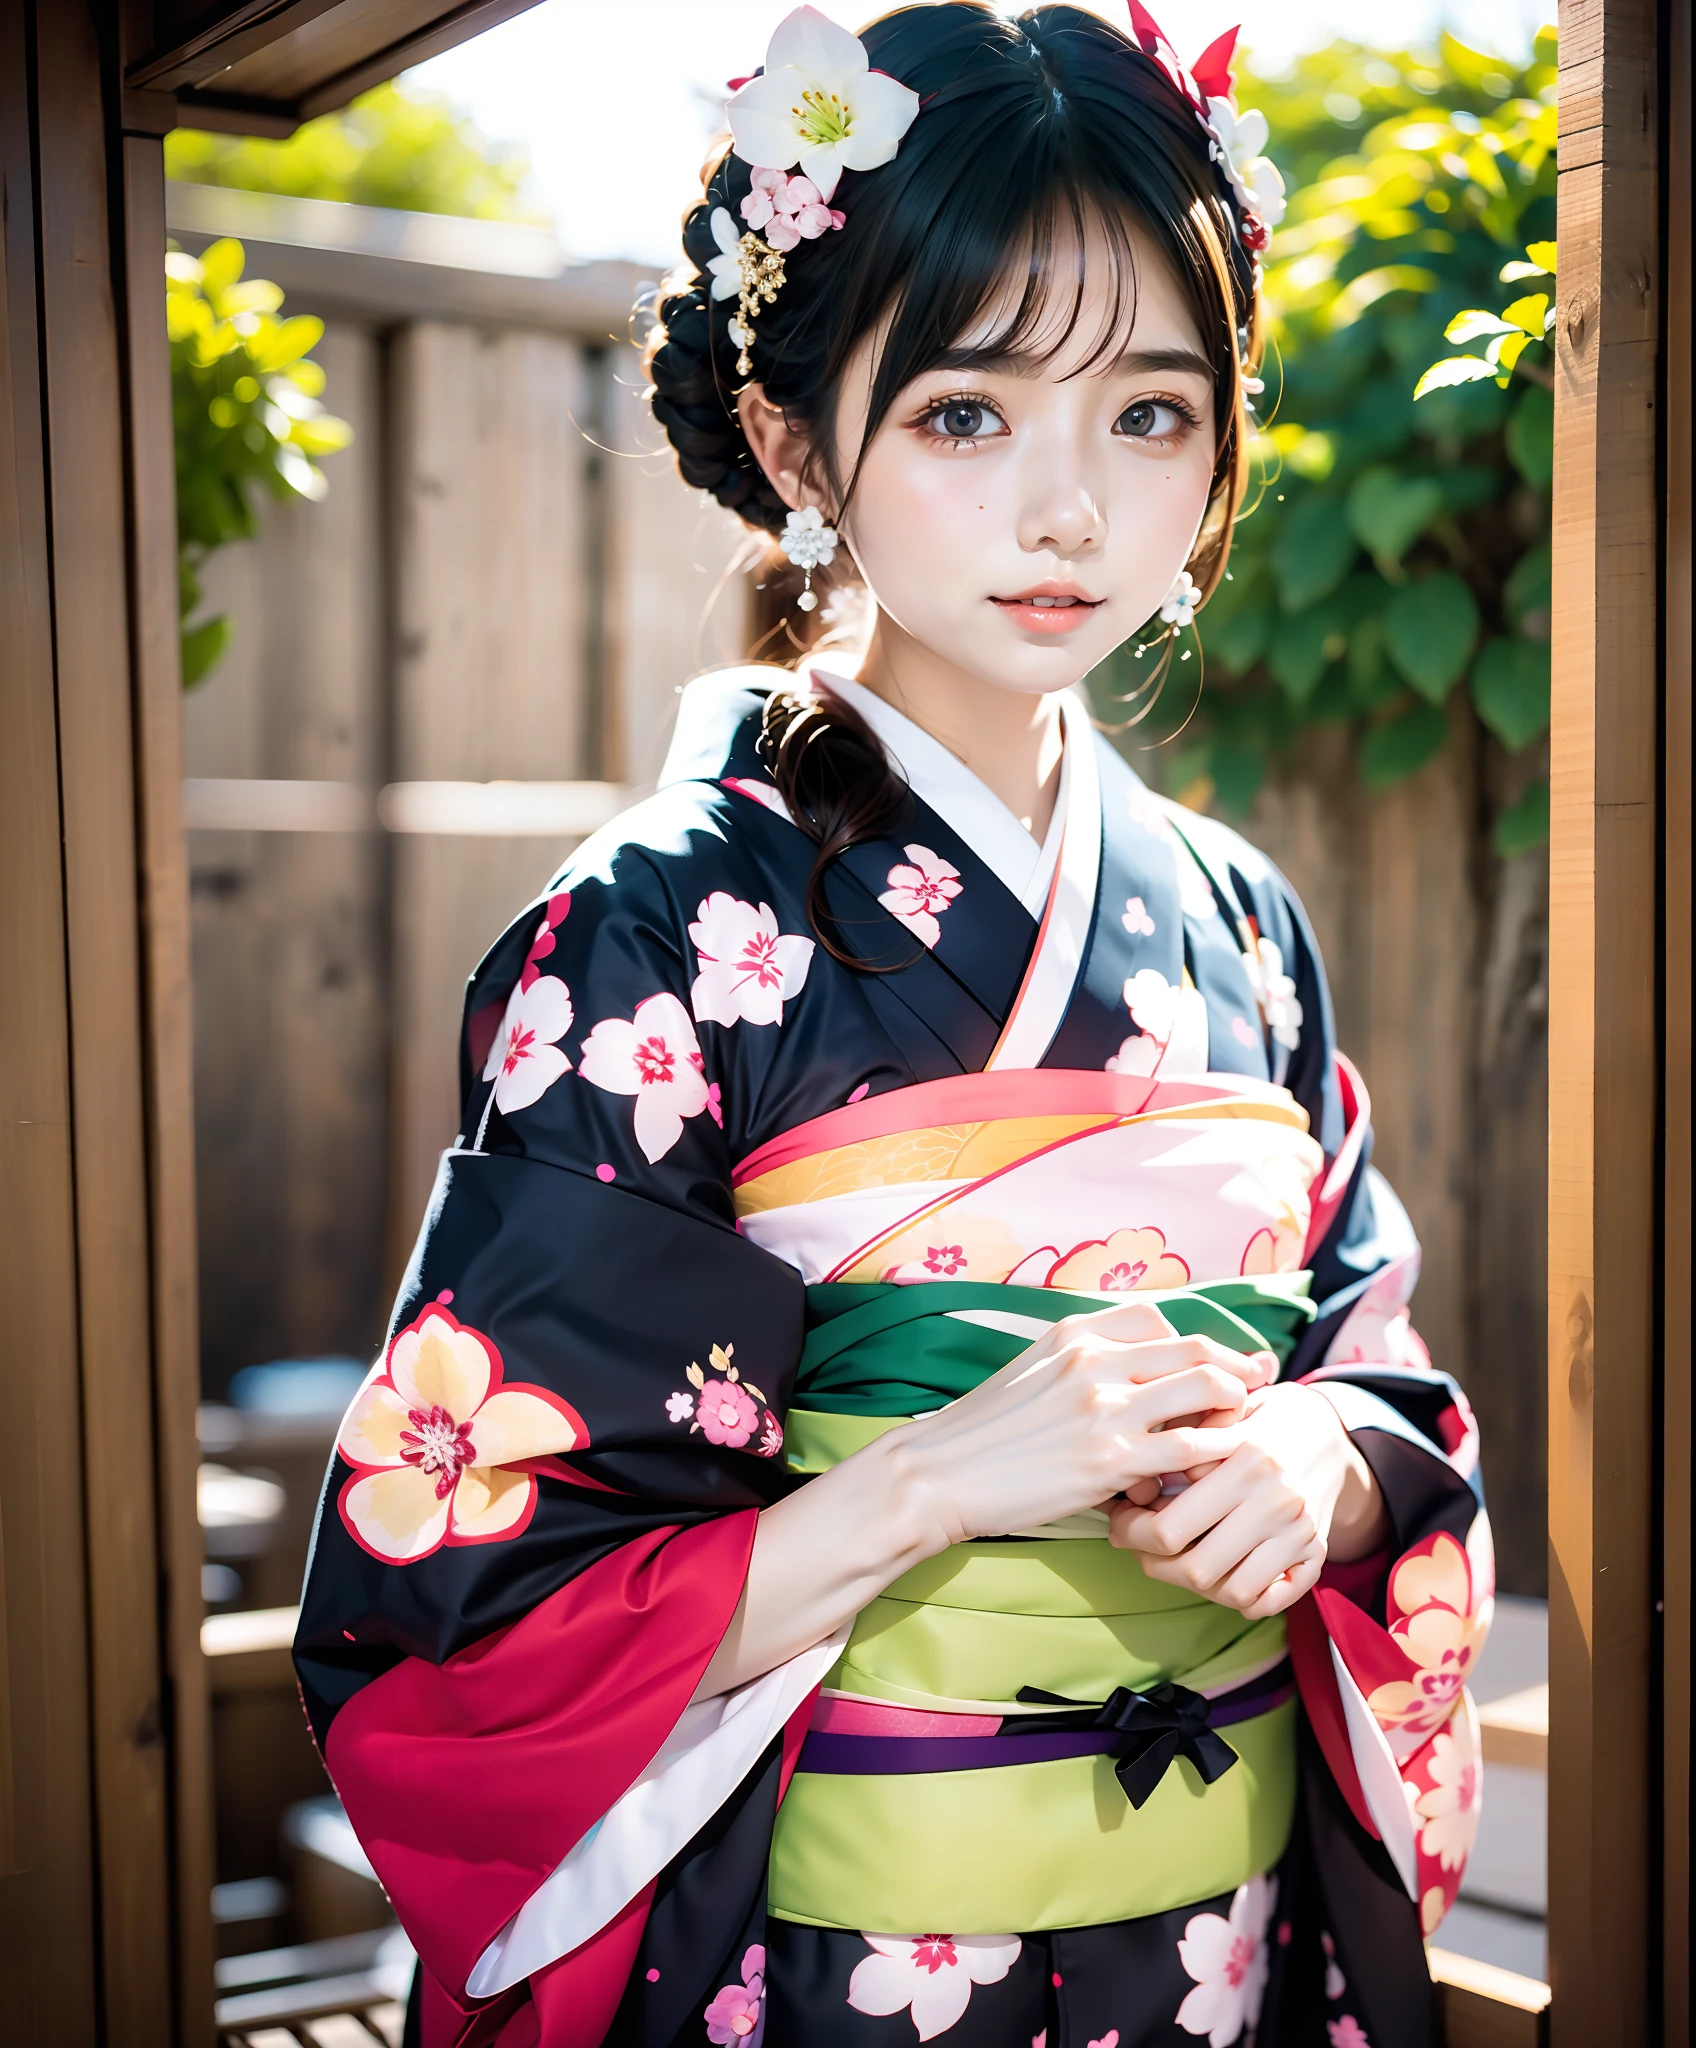 Obra de arte, realista, Mulher quimono do Japão com unaju, 18 anos de idade, quimono estampado de hortênsia, enfeite de cabelo em formato de hortênsia